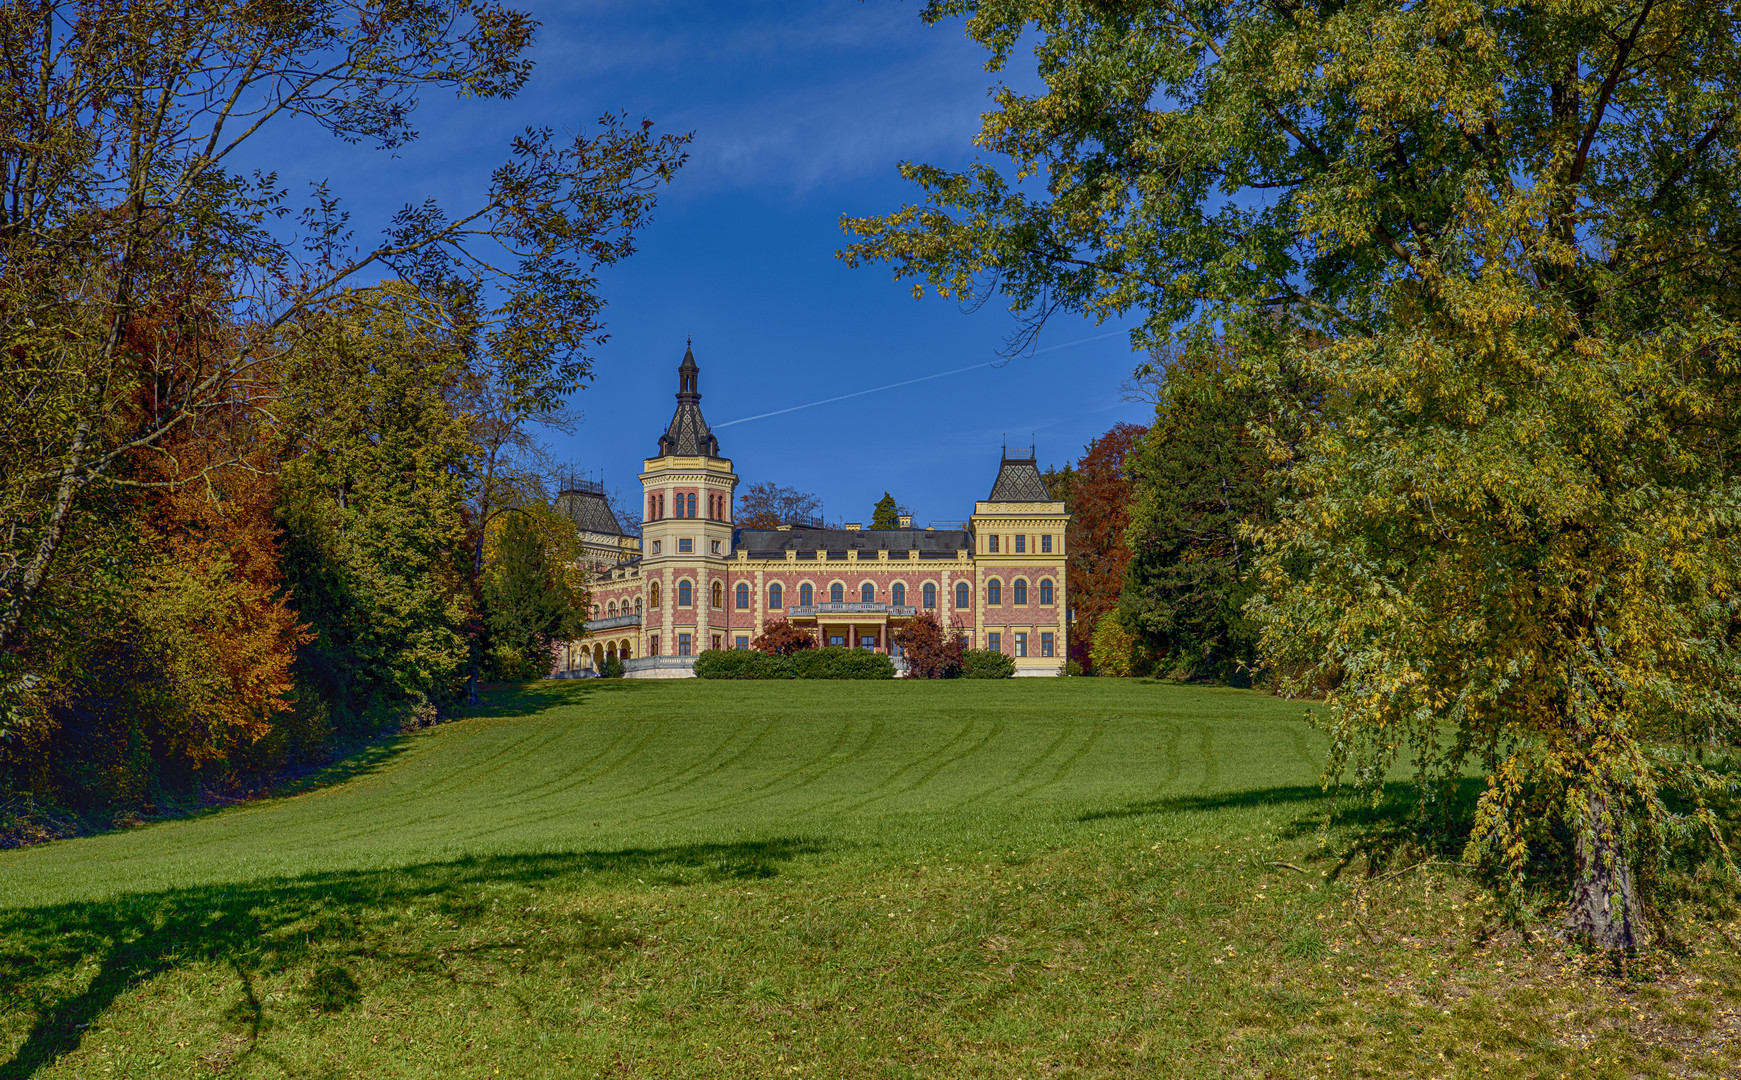 Schloss Traunsee